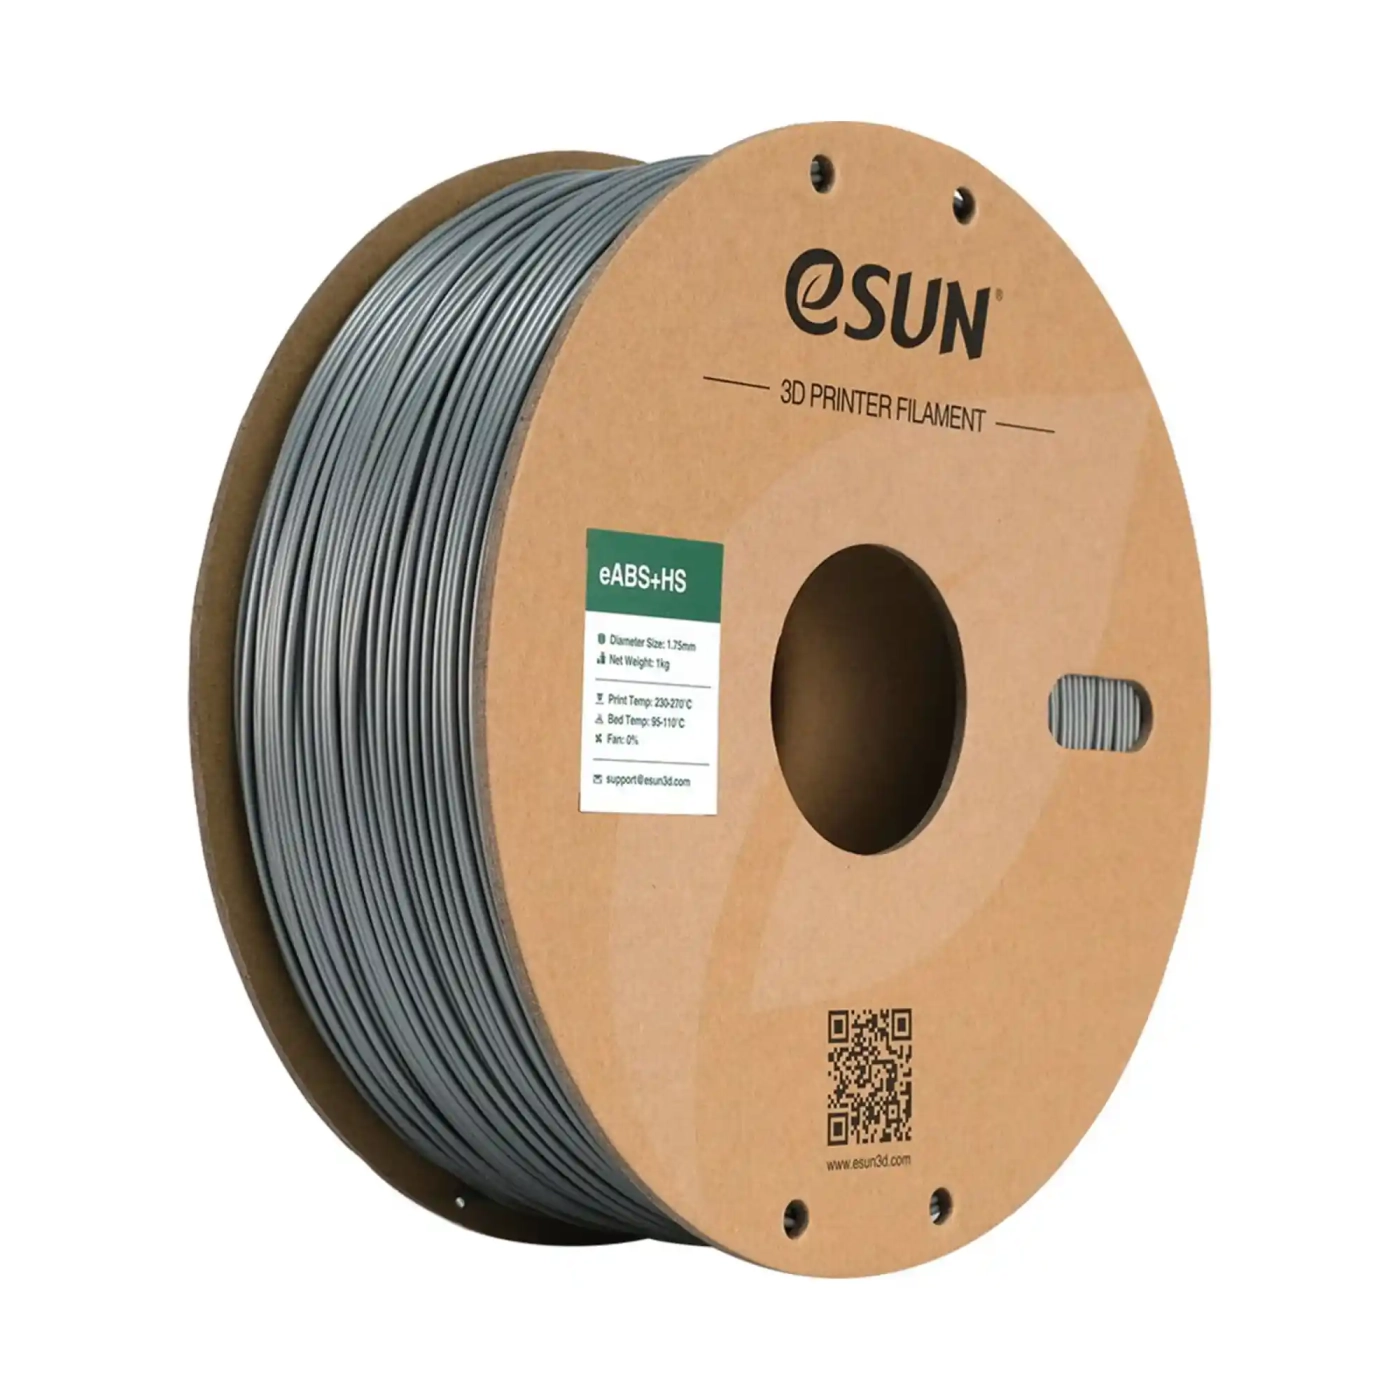 Купить eABS+HS Filament (пластик) для 3D принтера Esun 1кг, 1.75мм, серебристый (eABS+HS-175S1) - фото 1